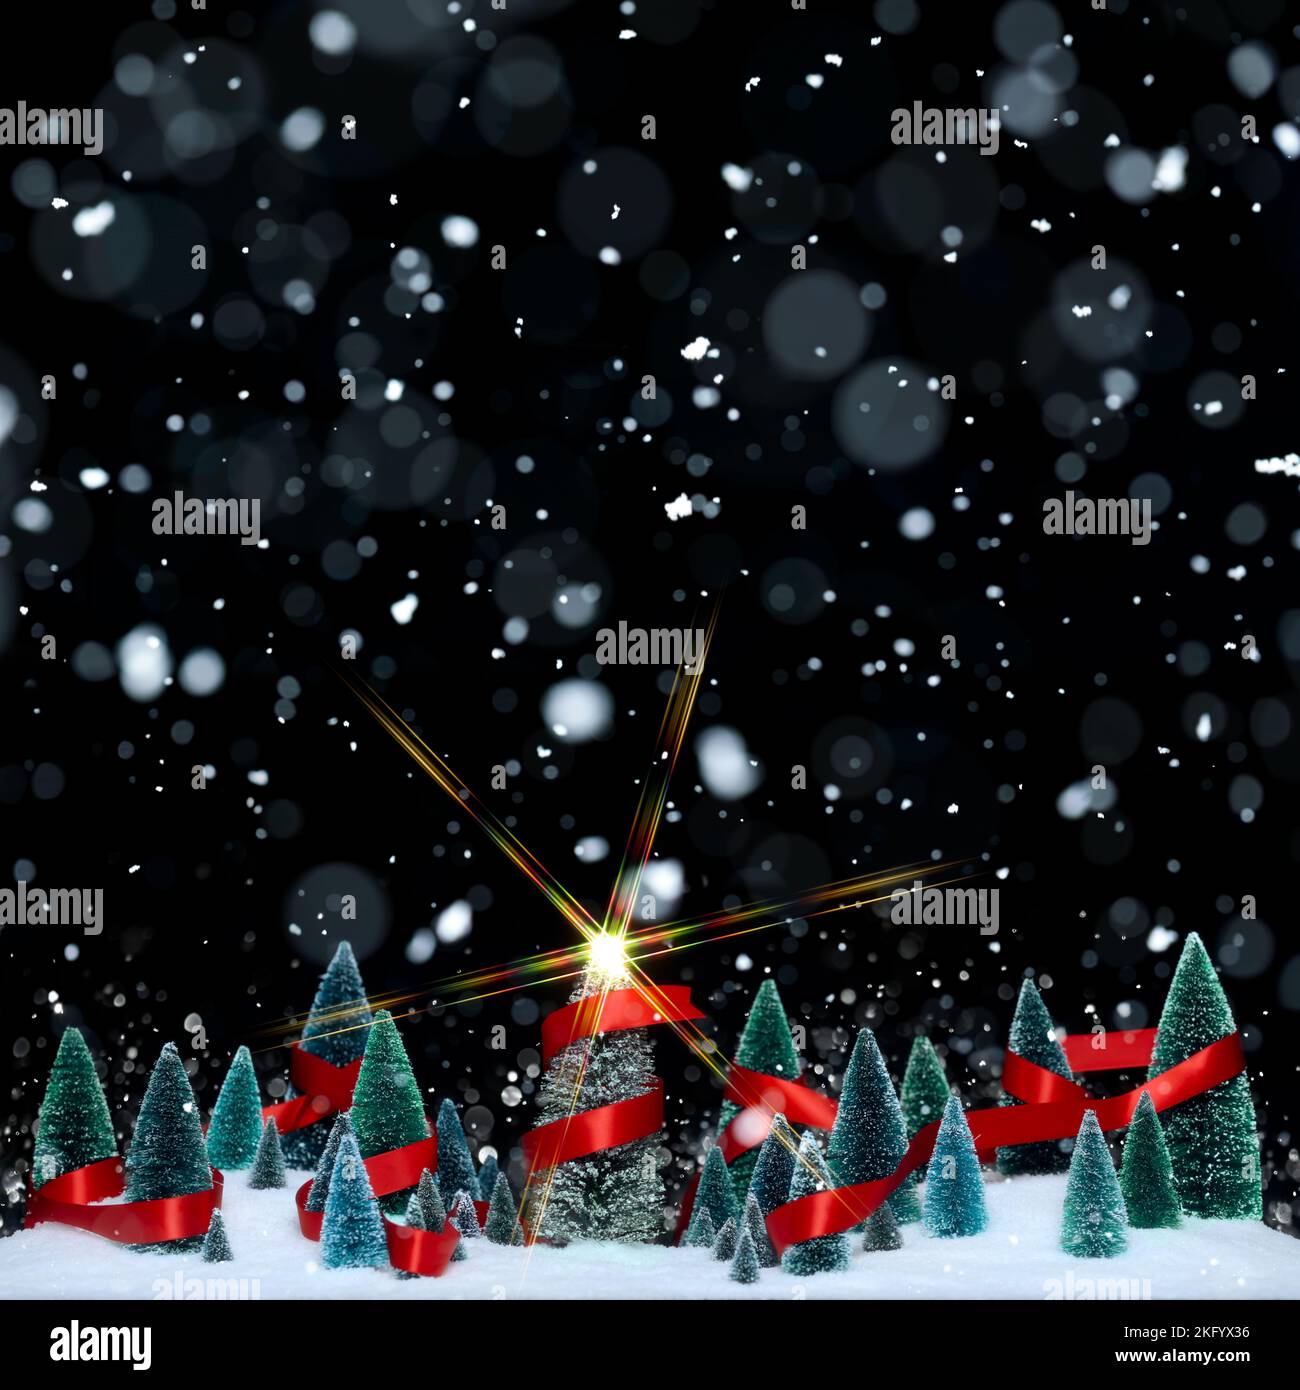 Schneit Winterwunderland mit Miniatur-Baumschmuck in einem glänzenden roten Band mit funkelnden Stern auf Weihnachtsbaum eingewickelt. Stockfoto